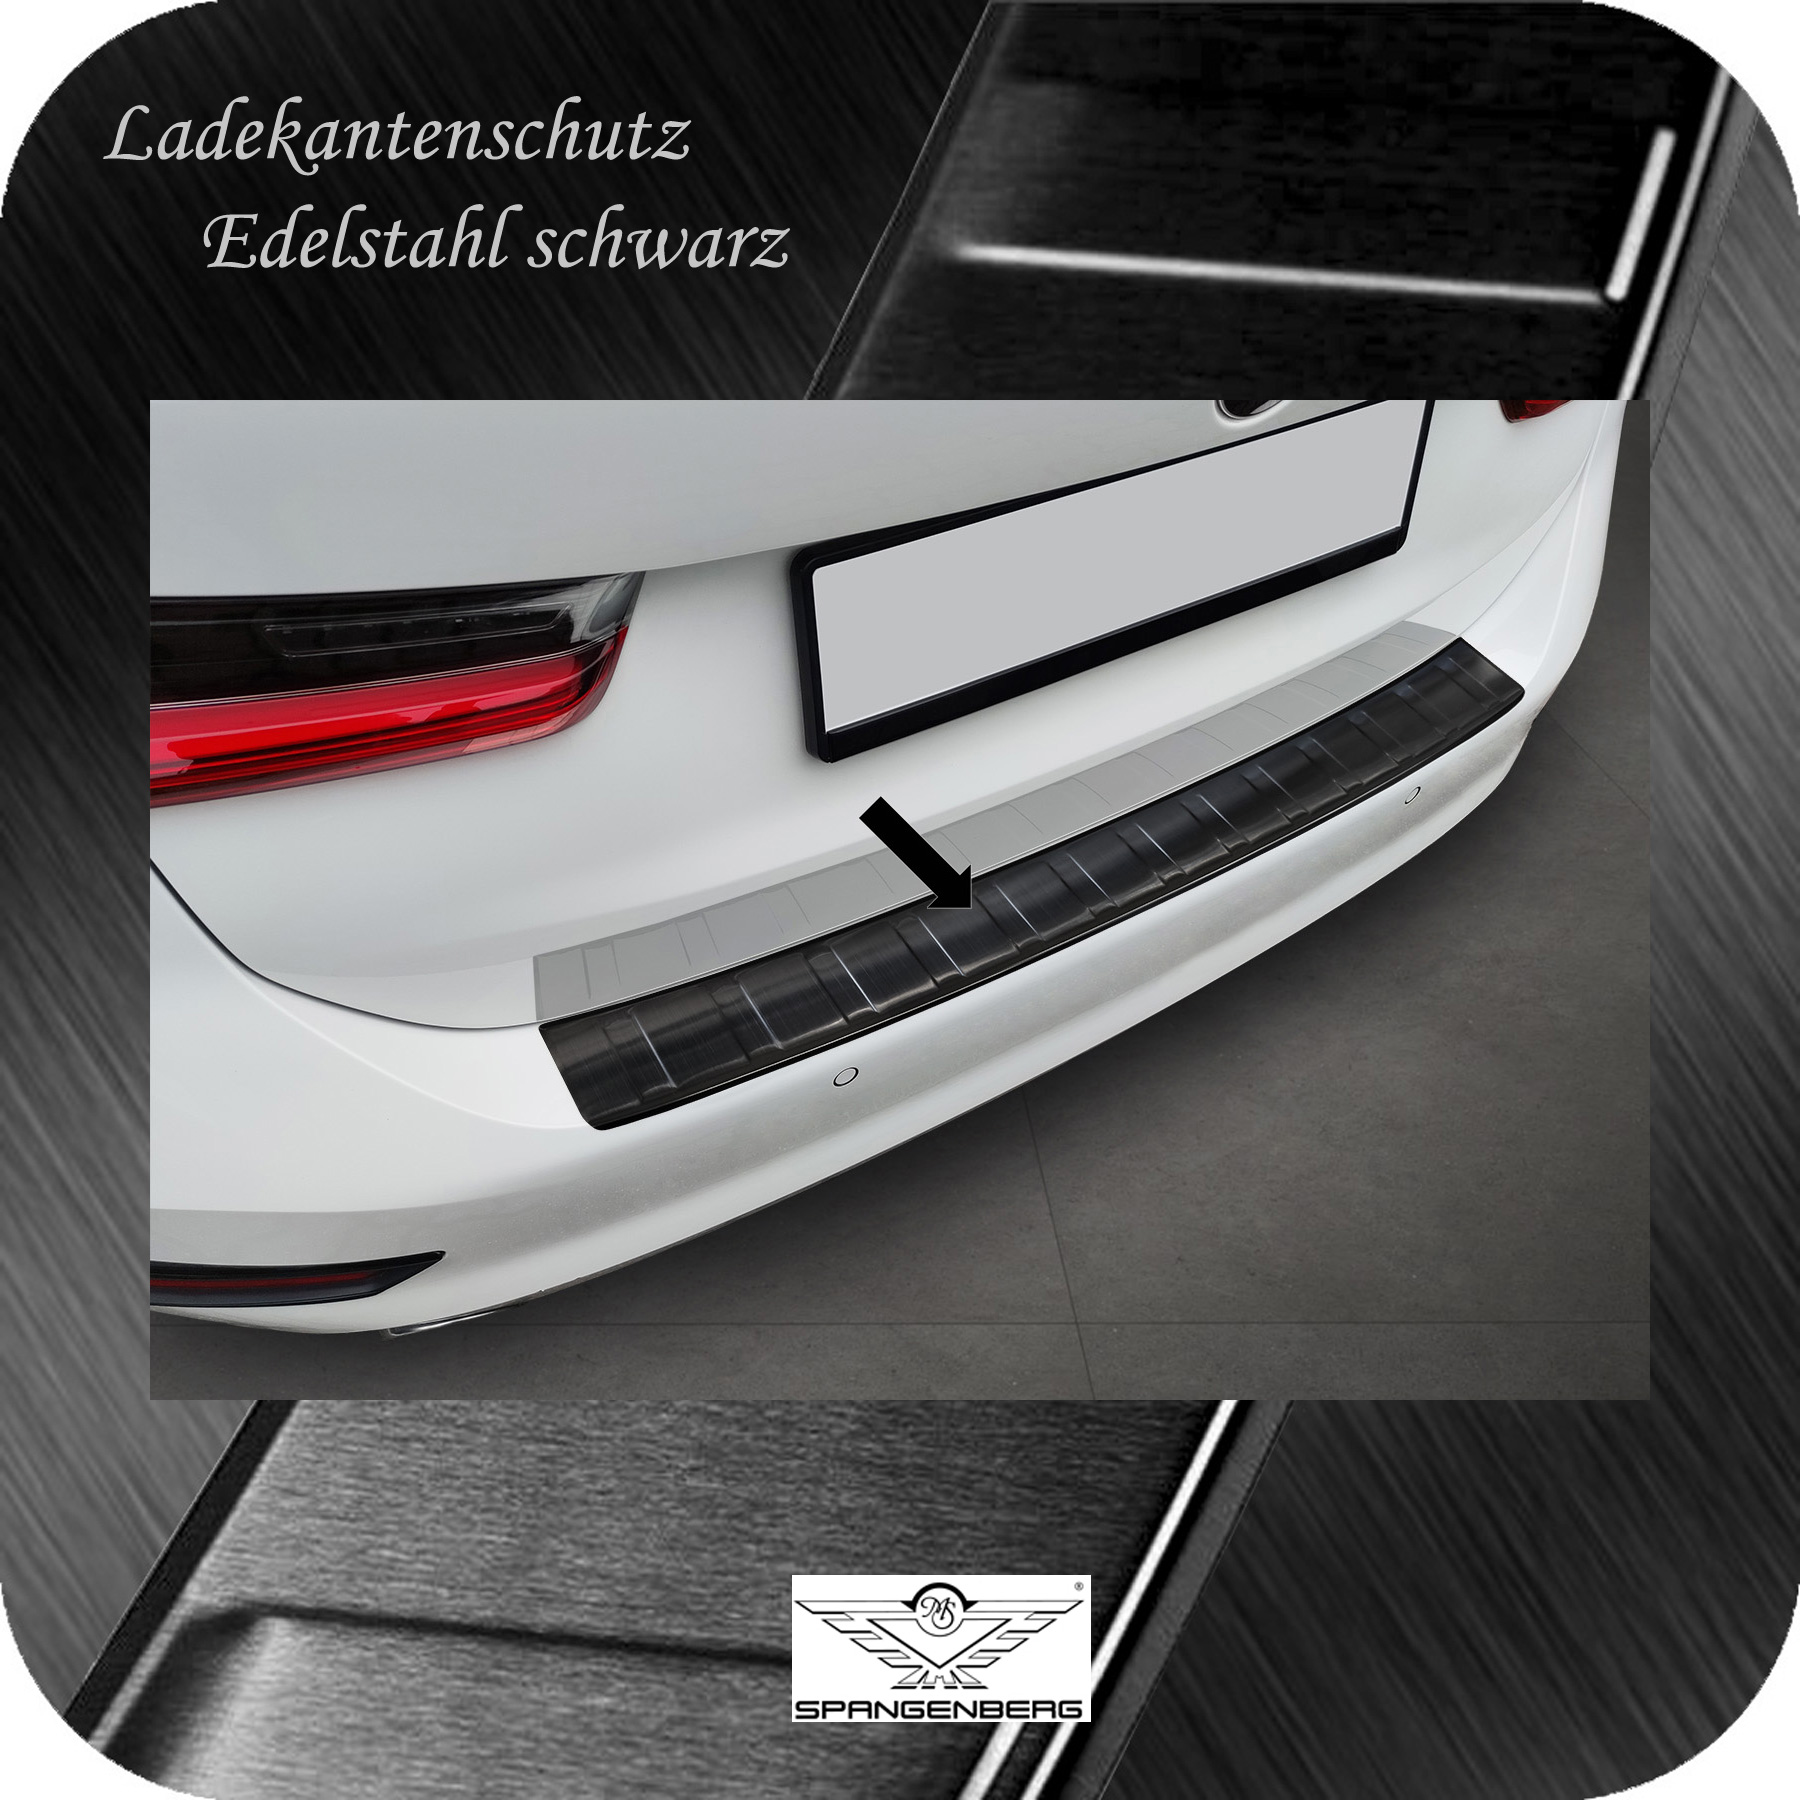 Ladekantenschutz Edelstahl schwarz für BMW 3er Touring G21 06.19-07.22 3245355